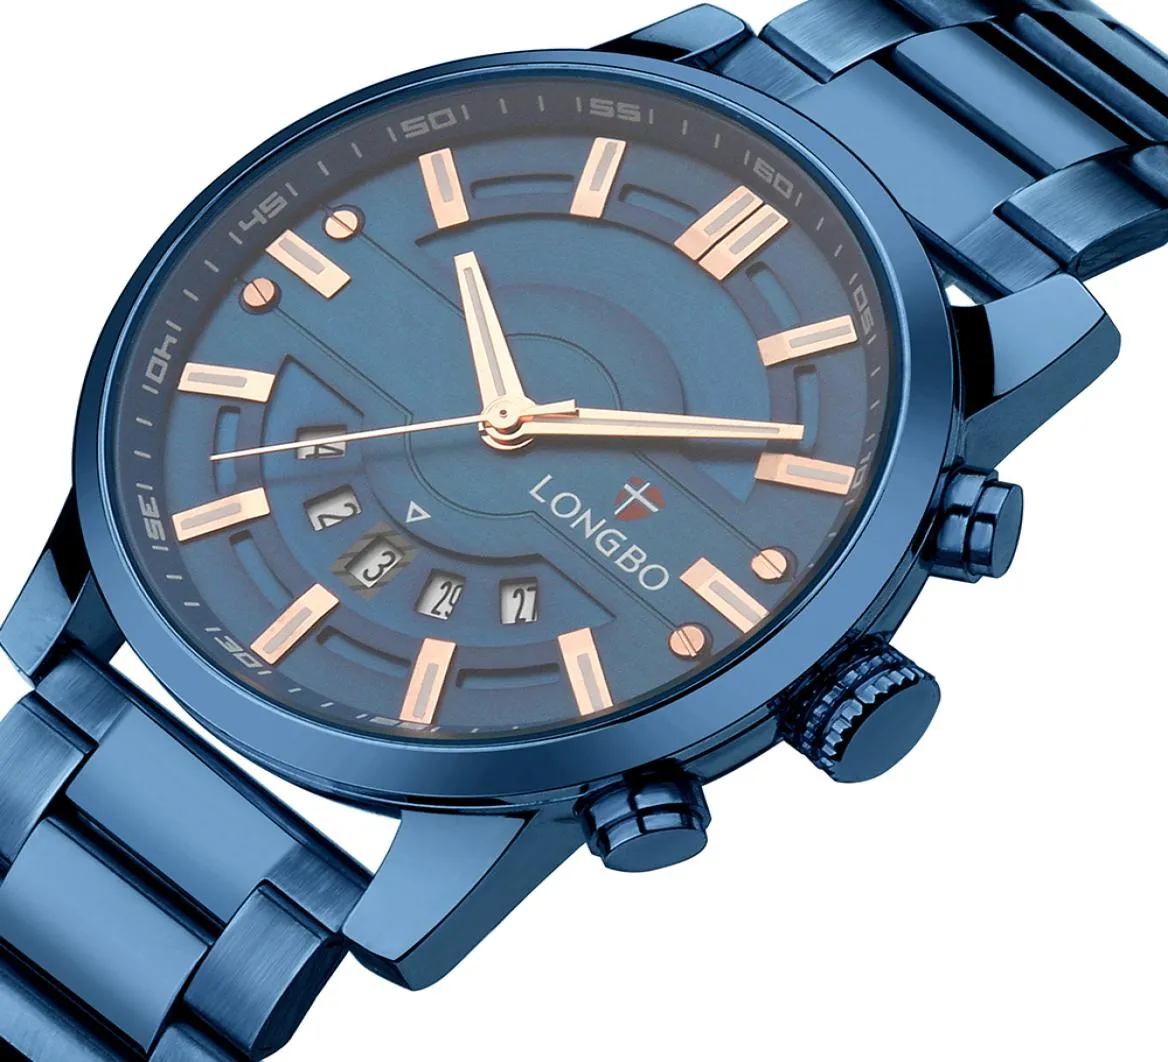 2020 Longbo Top Luxury Brand Männer Watch Quarz männliche Uhr Design Sport Uhren wasserdichte Edelstahl Armbandwatch Reloj Hombre 21288559